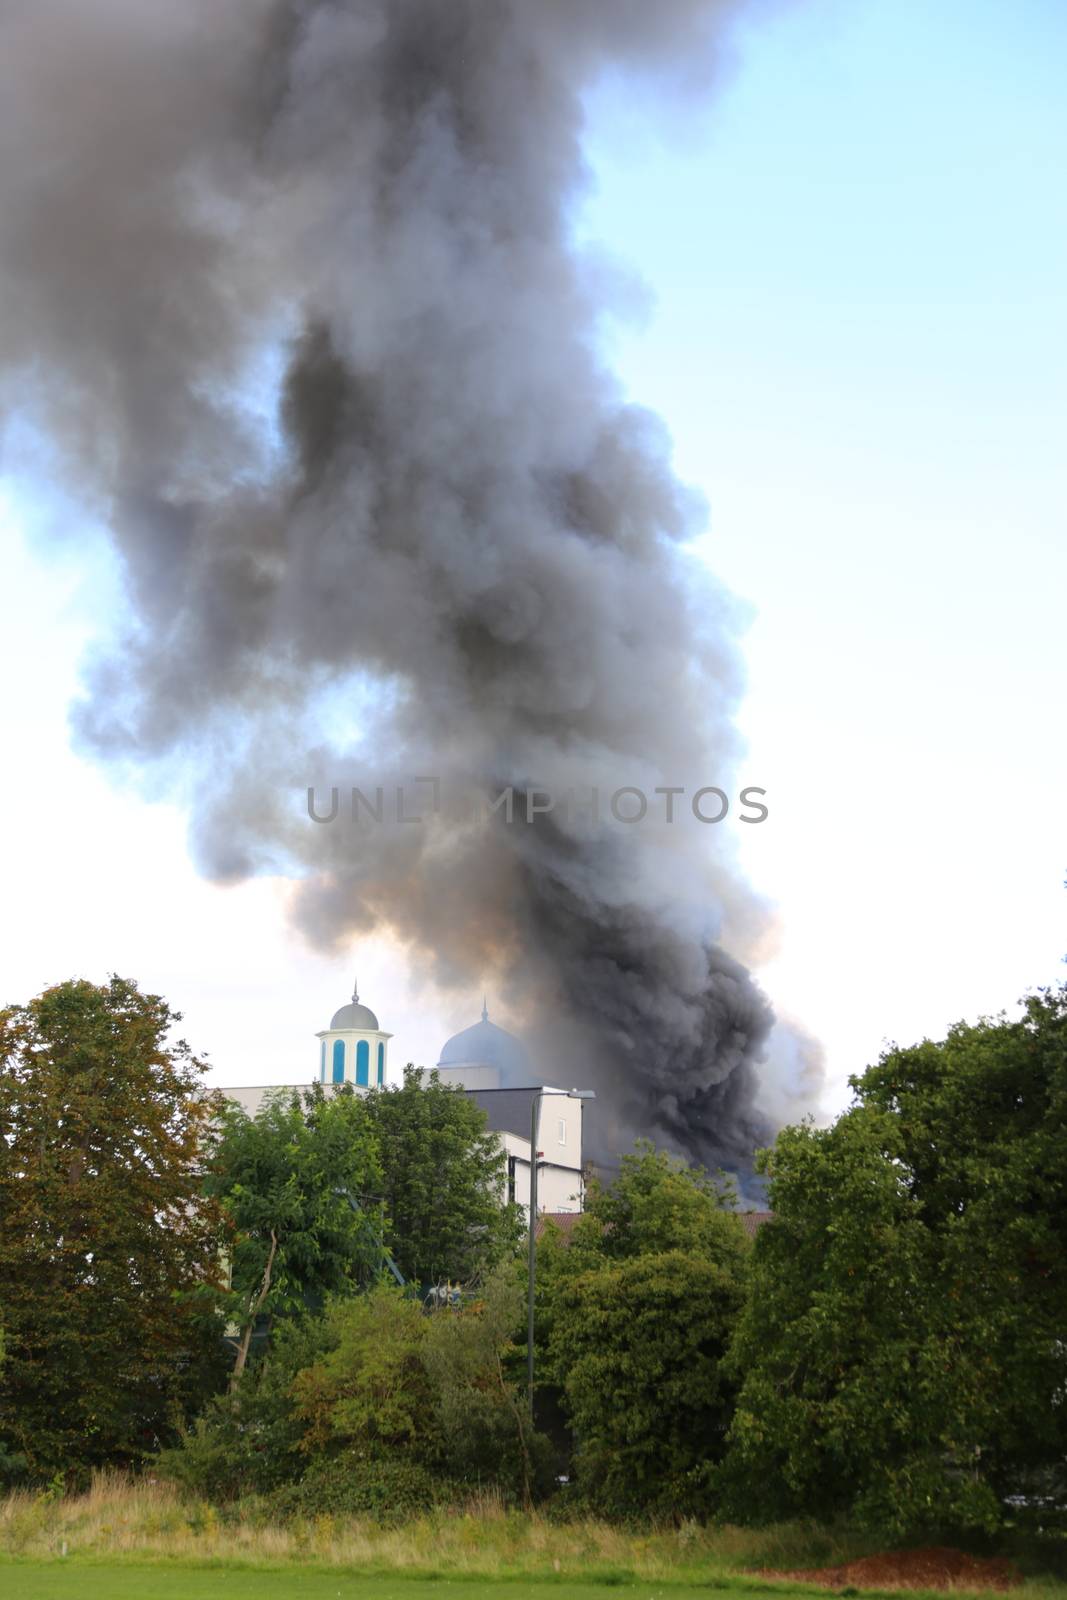 LONDON-MOSQUE-FIRE by newzulu